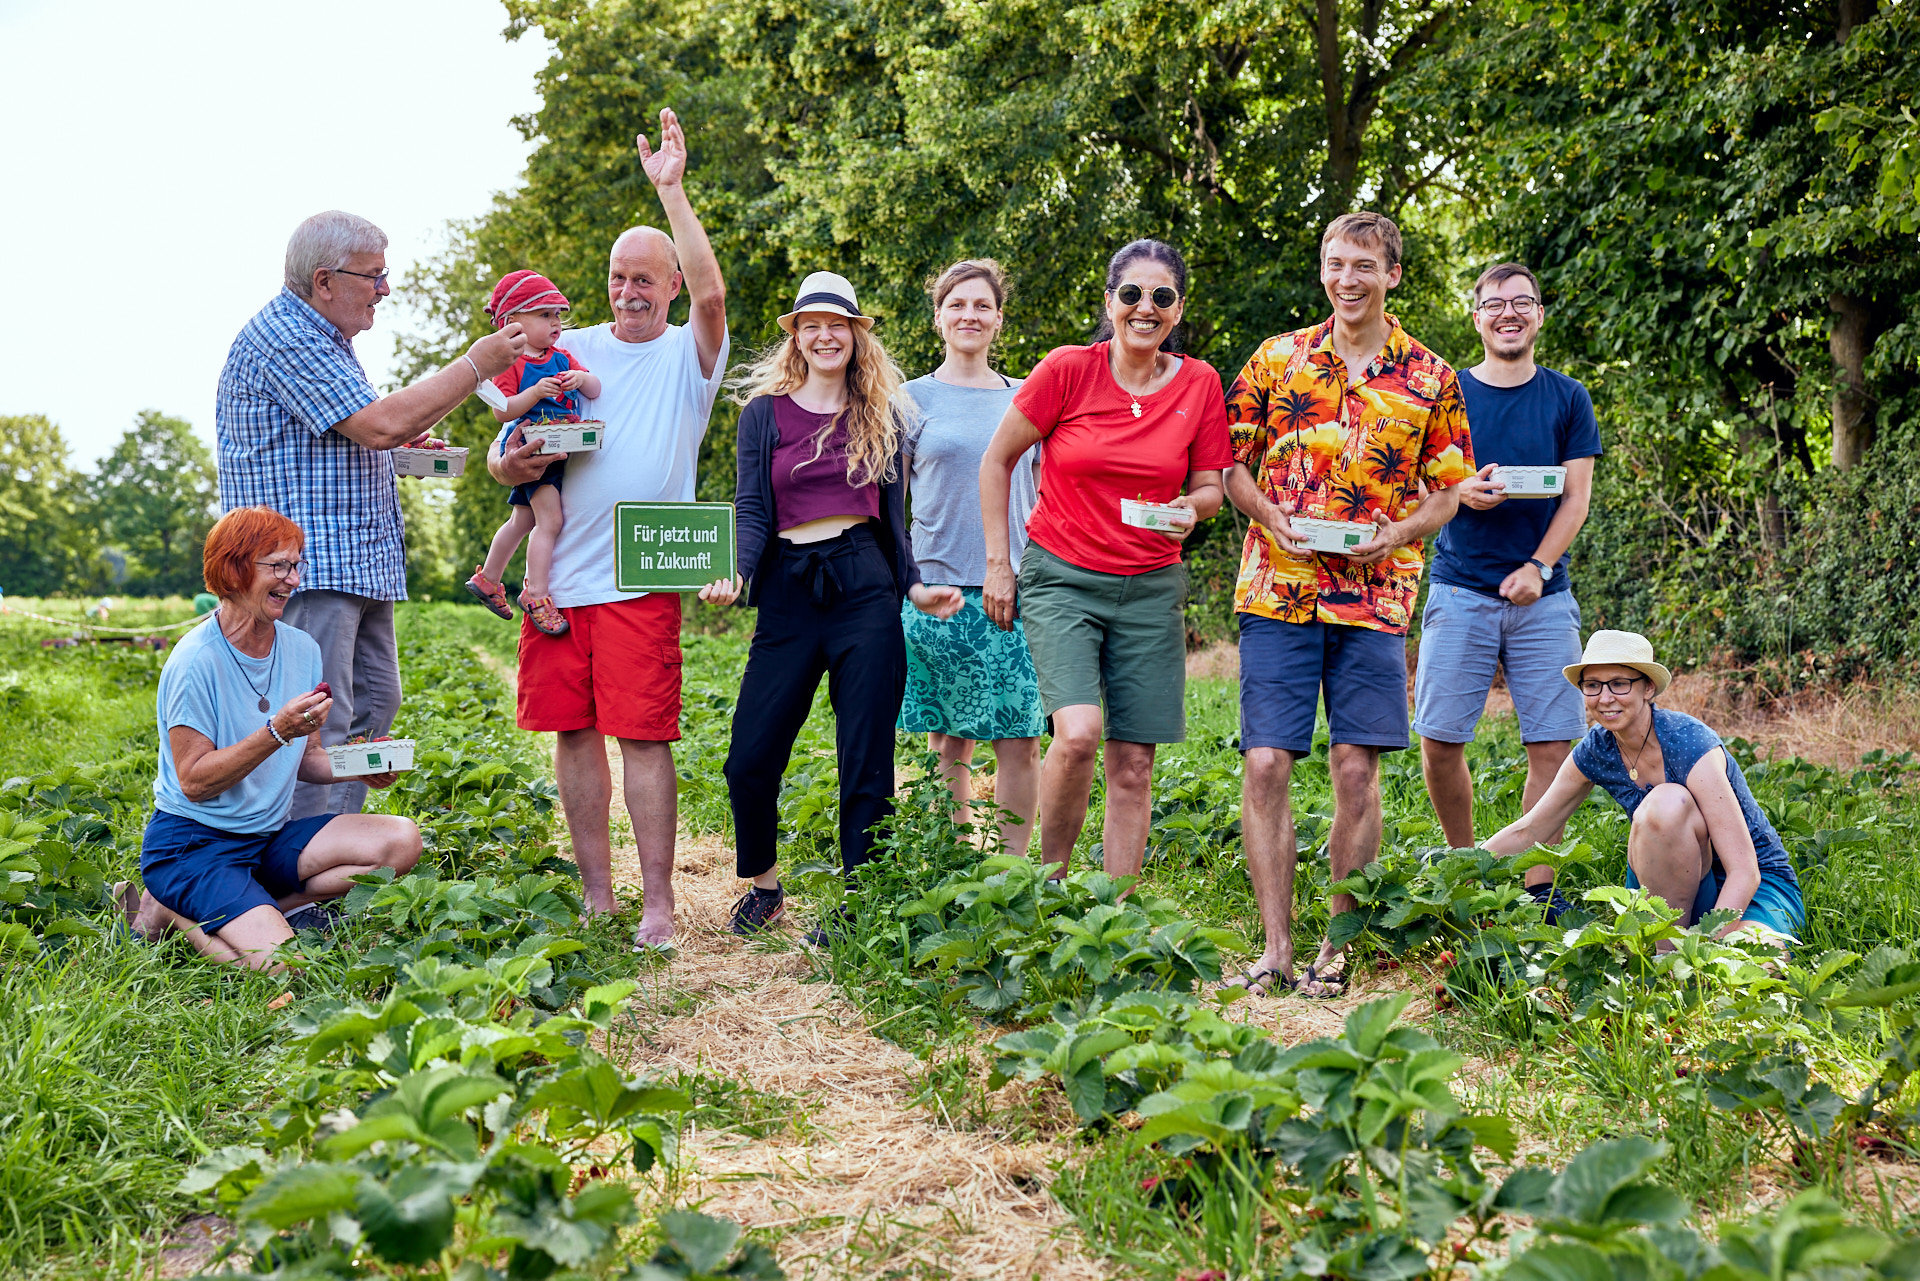 Landwirt Arno Eckert vom Birkenhof in Egelsbach und Mitglieder der solidarische Landwirtschaft mit Schild „Für jetzt und in Zukunft!“ (Foto: Niko Martin)